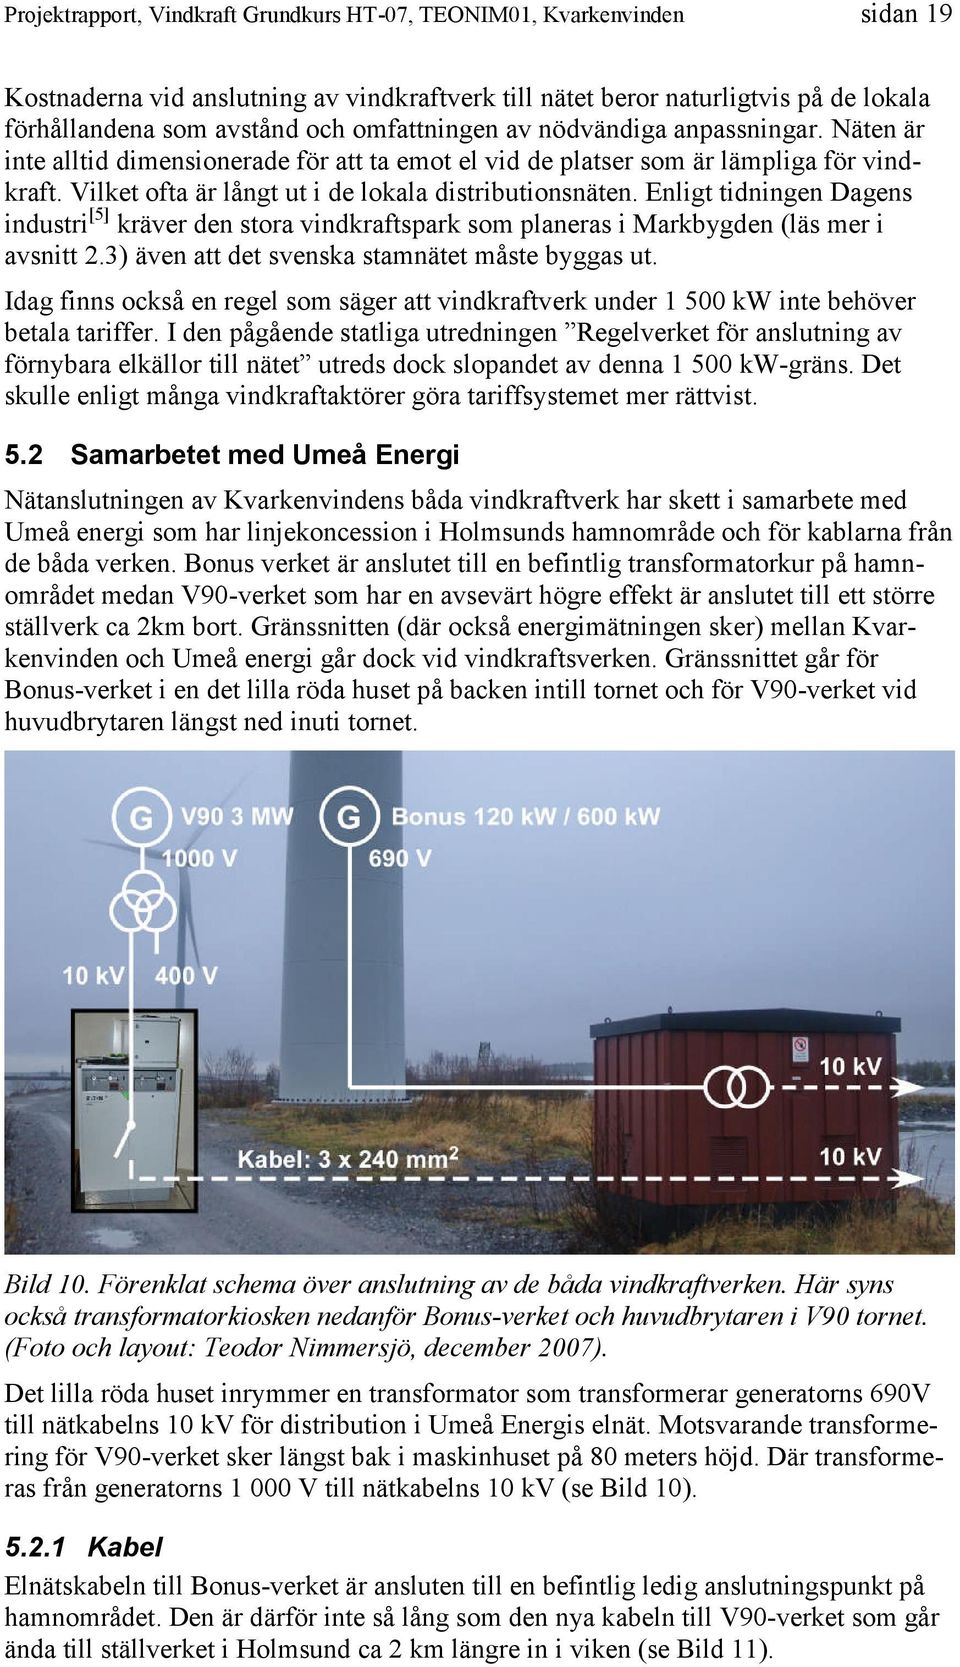 Enligt tidningen Dagens industri[5] kräver den stora vindkraftspark som planeras i Markbygden (läs mer i avsnitt 2.3) även att det svenska stamnätet måste byggas ut.